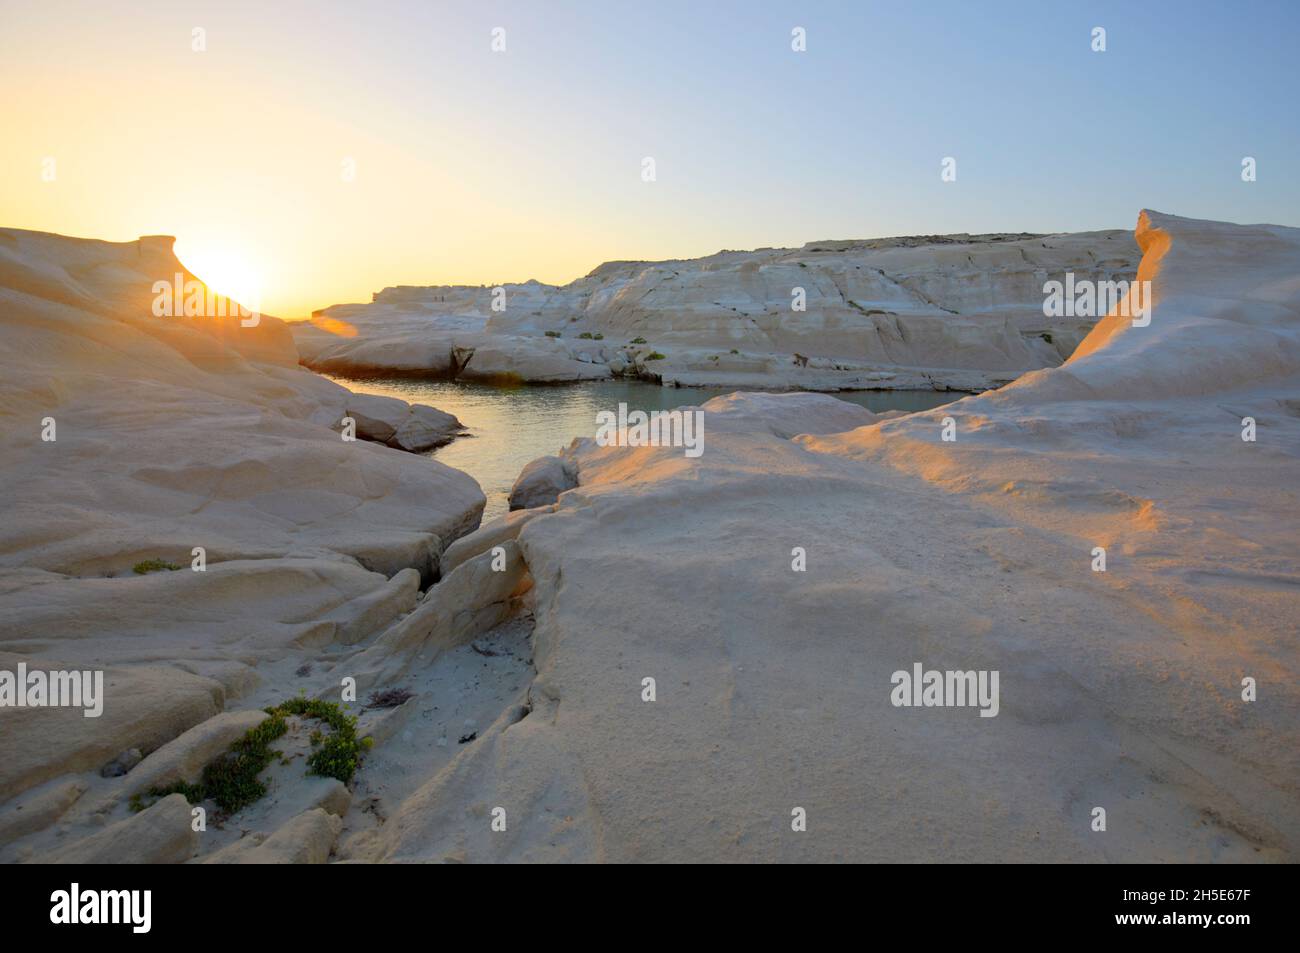 Los acantilados blancos de la playa de Sarakiniko al amanecer, Milos, Grecia Foto de stock